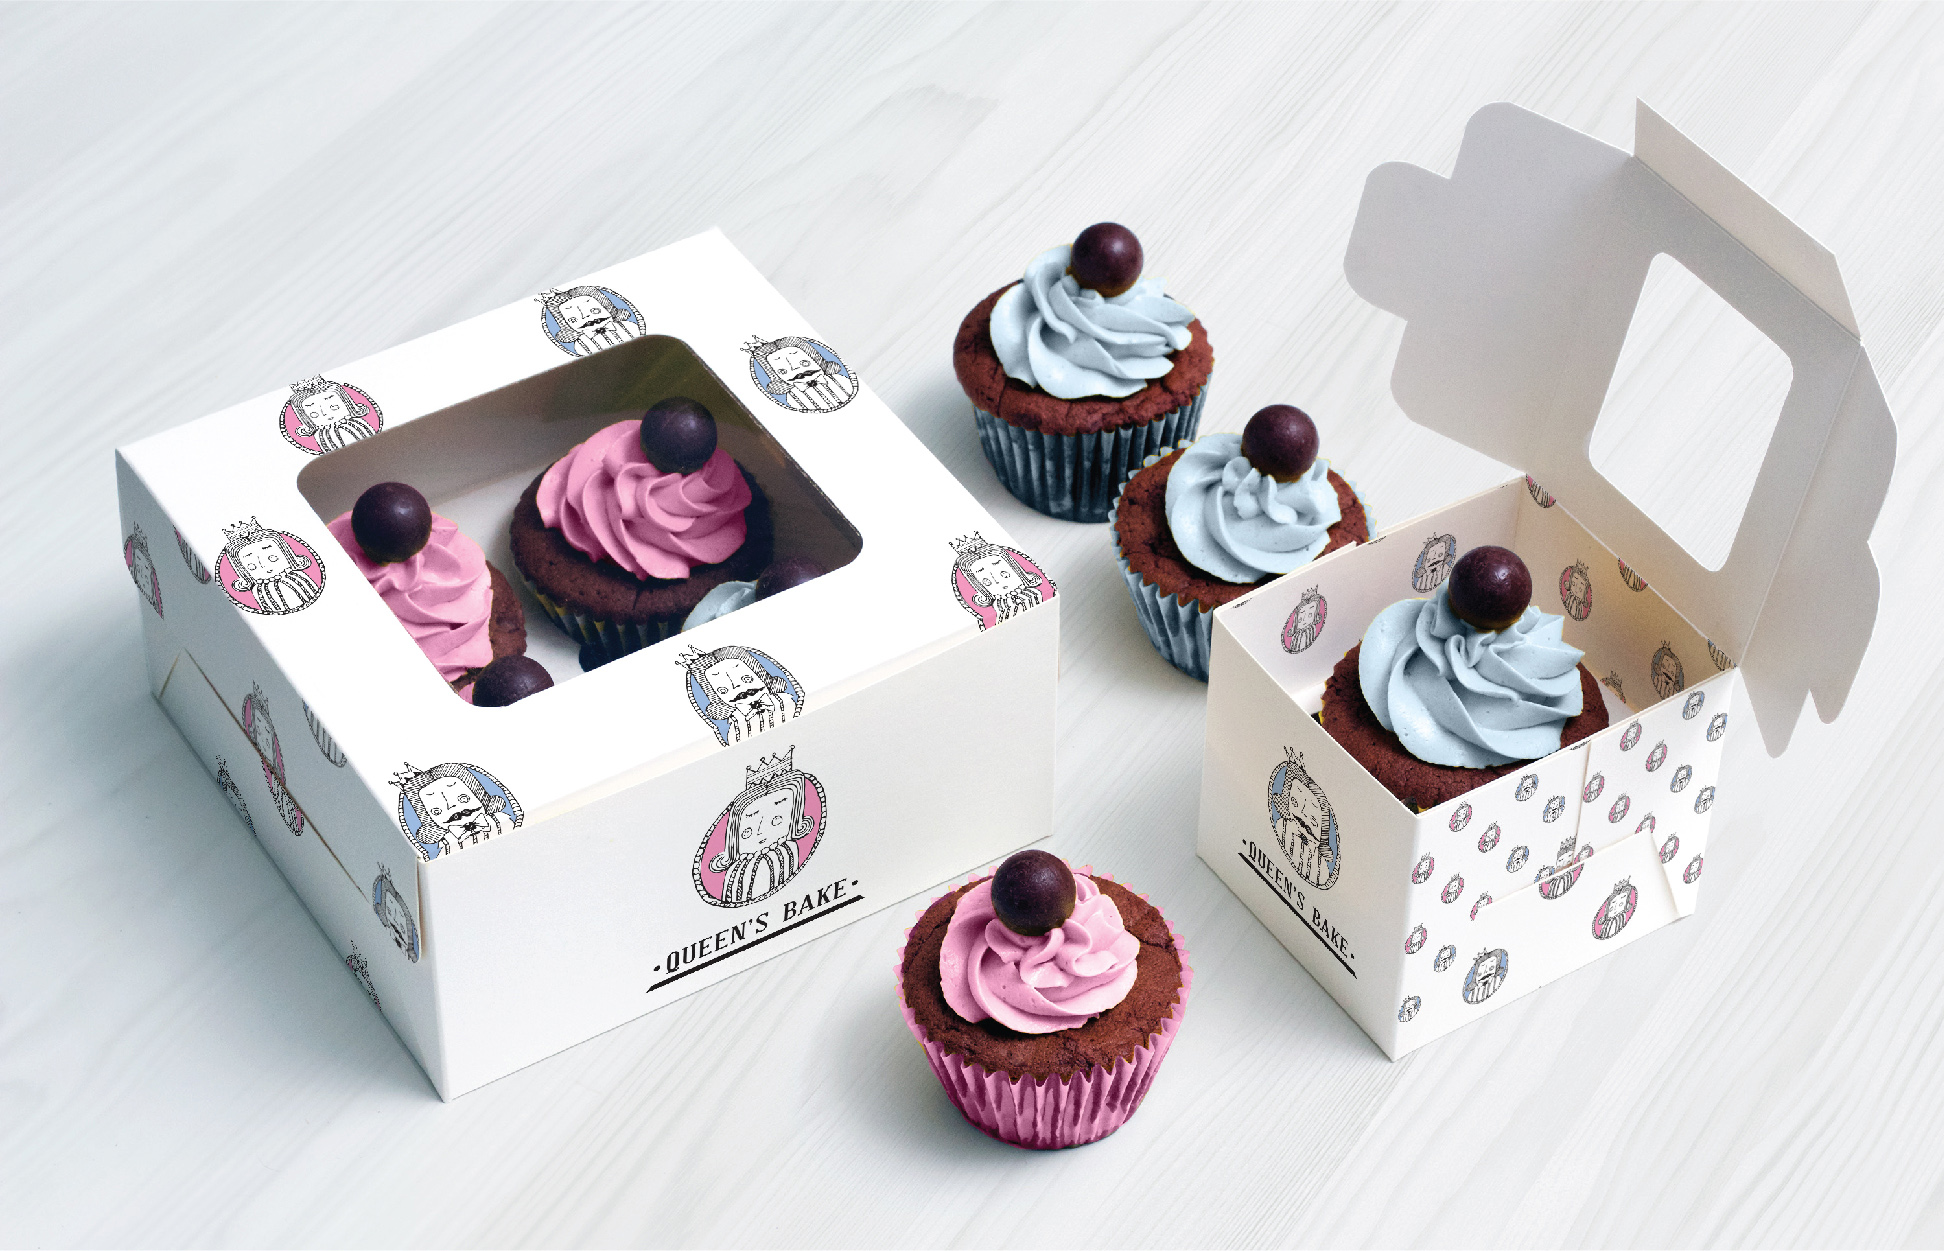 Queen’s Bake Branding by Liquid Advertising